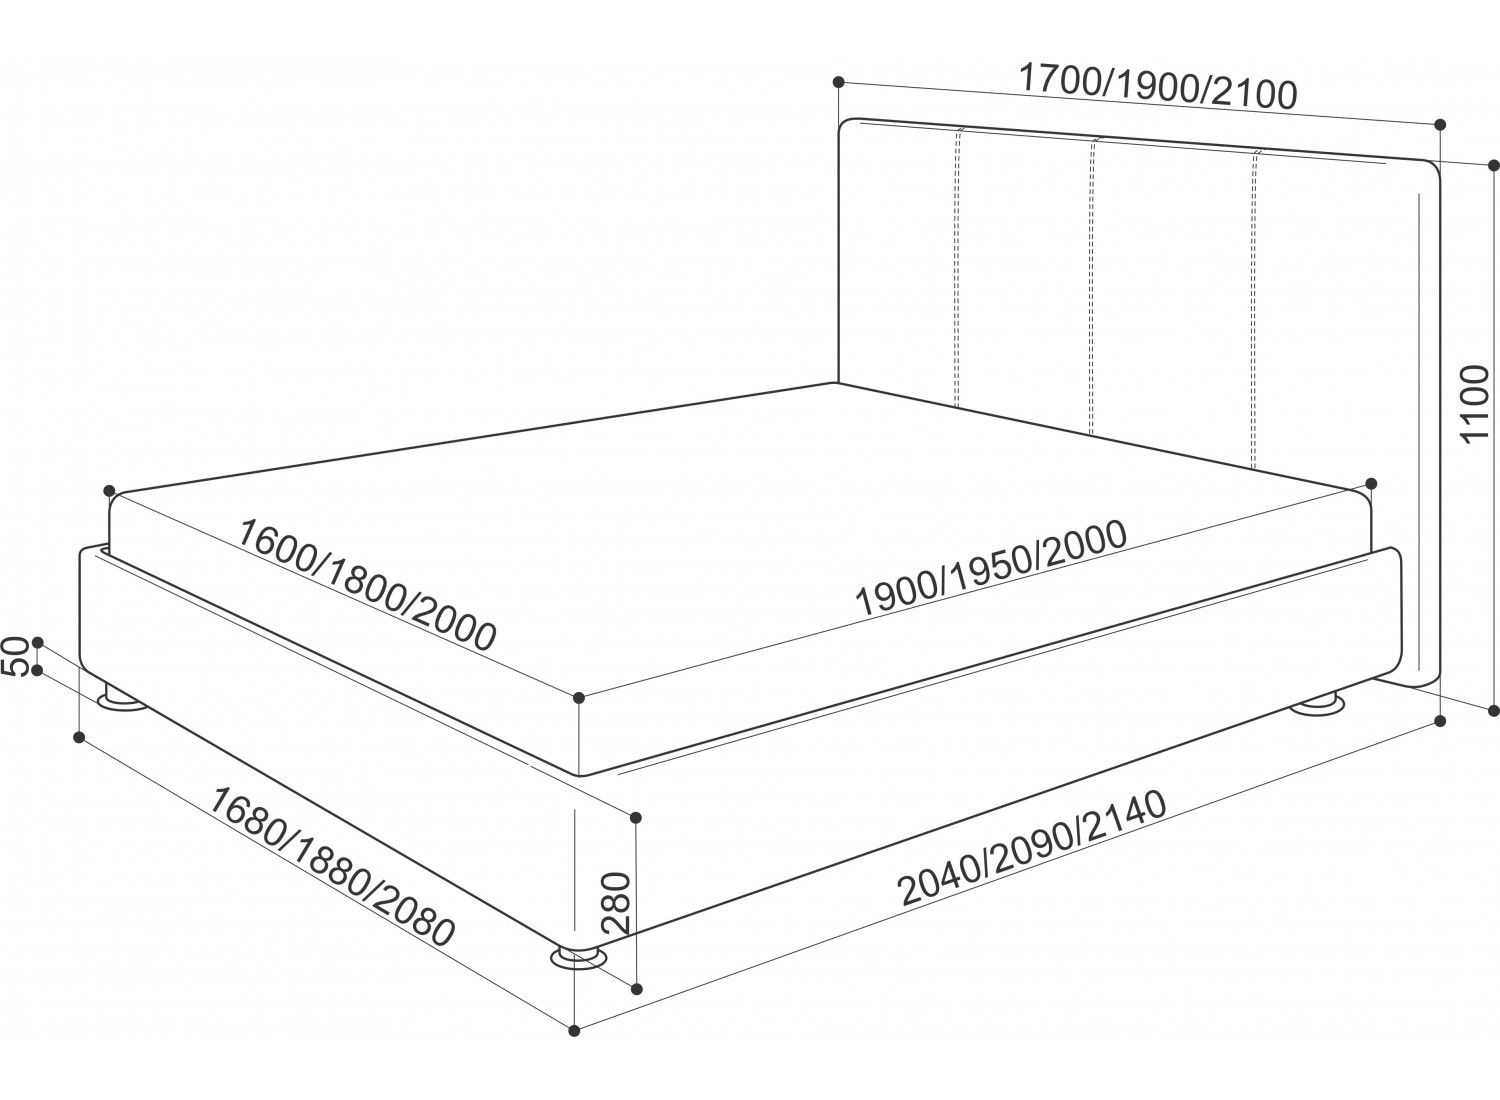 Стандартные размеры матрасов: таблица, длина и ширина в см, современный стандарт